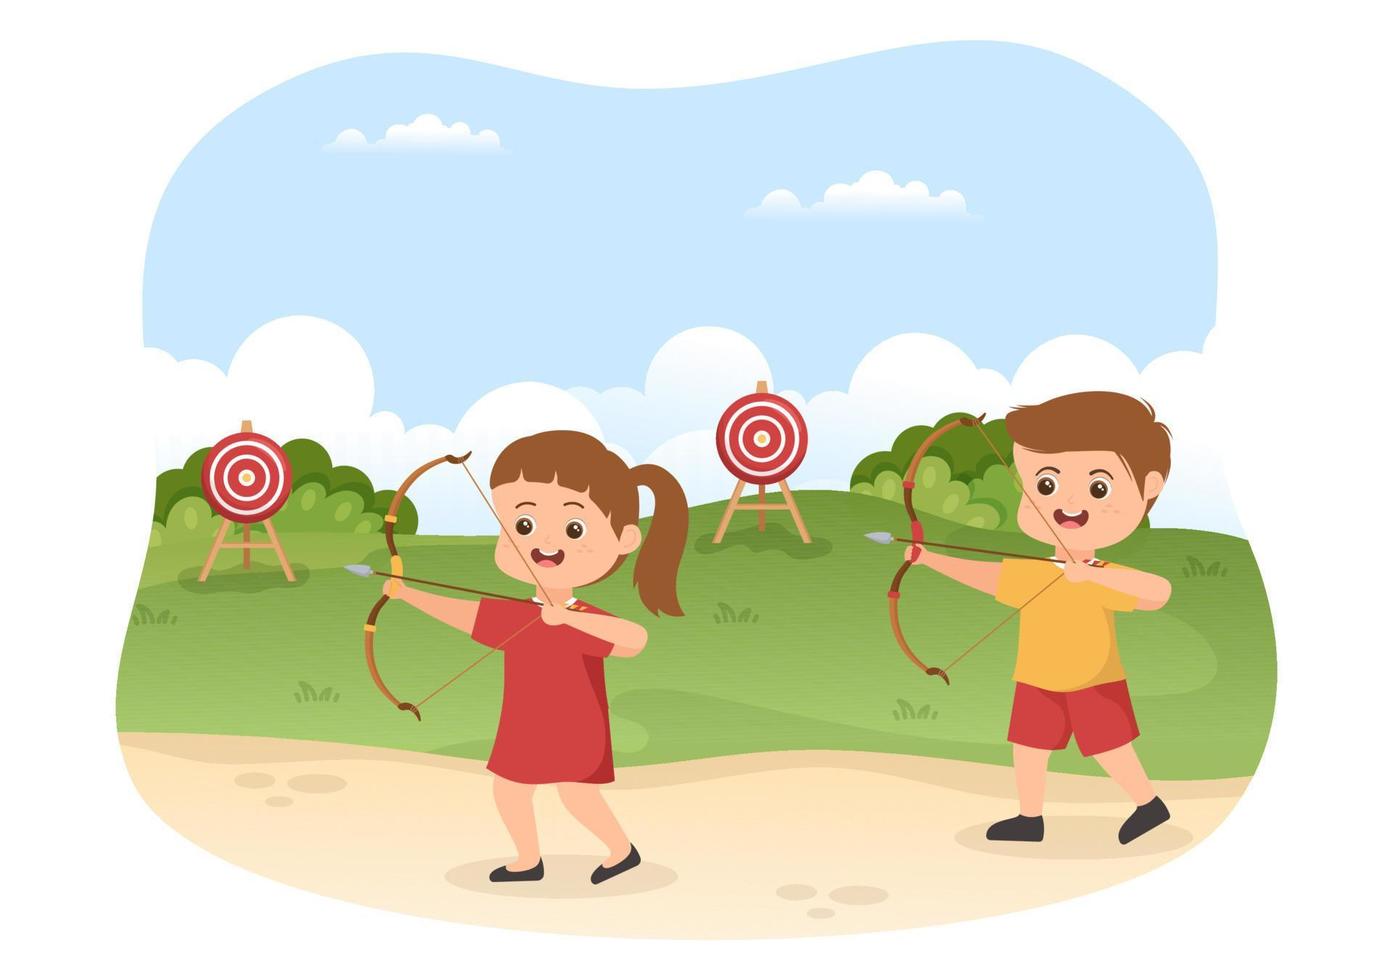 deporte de tiro con arco con niños, arco y flecha apuntando al objetivo para actividades recreativas al aire libre en ilustración de plantilla dibujada a mano de caricatura plana vector